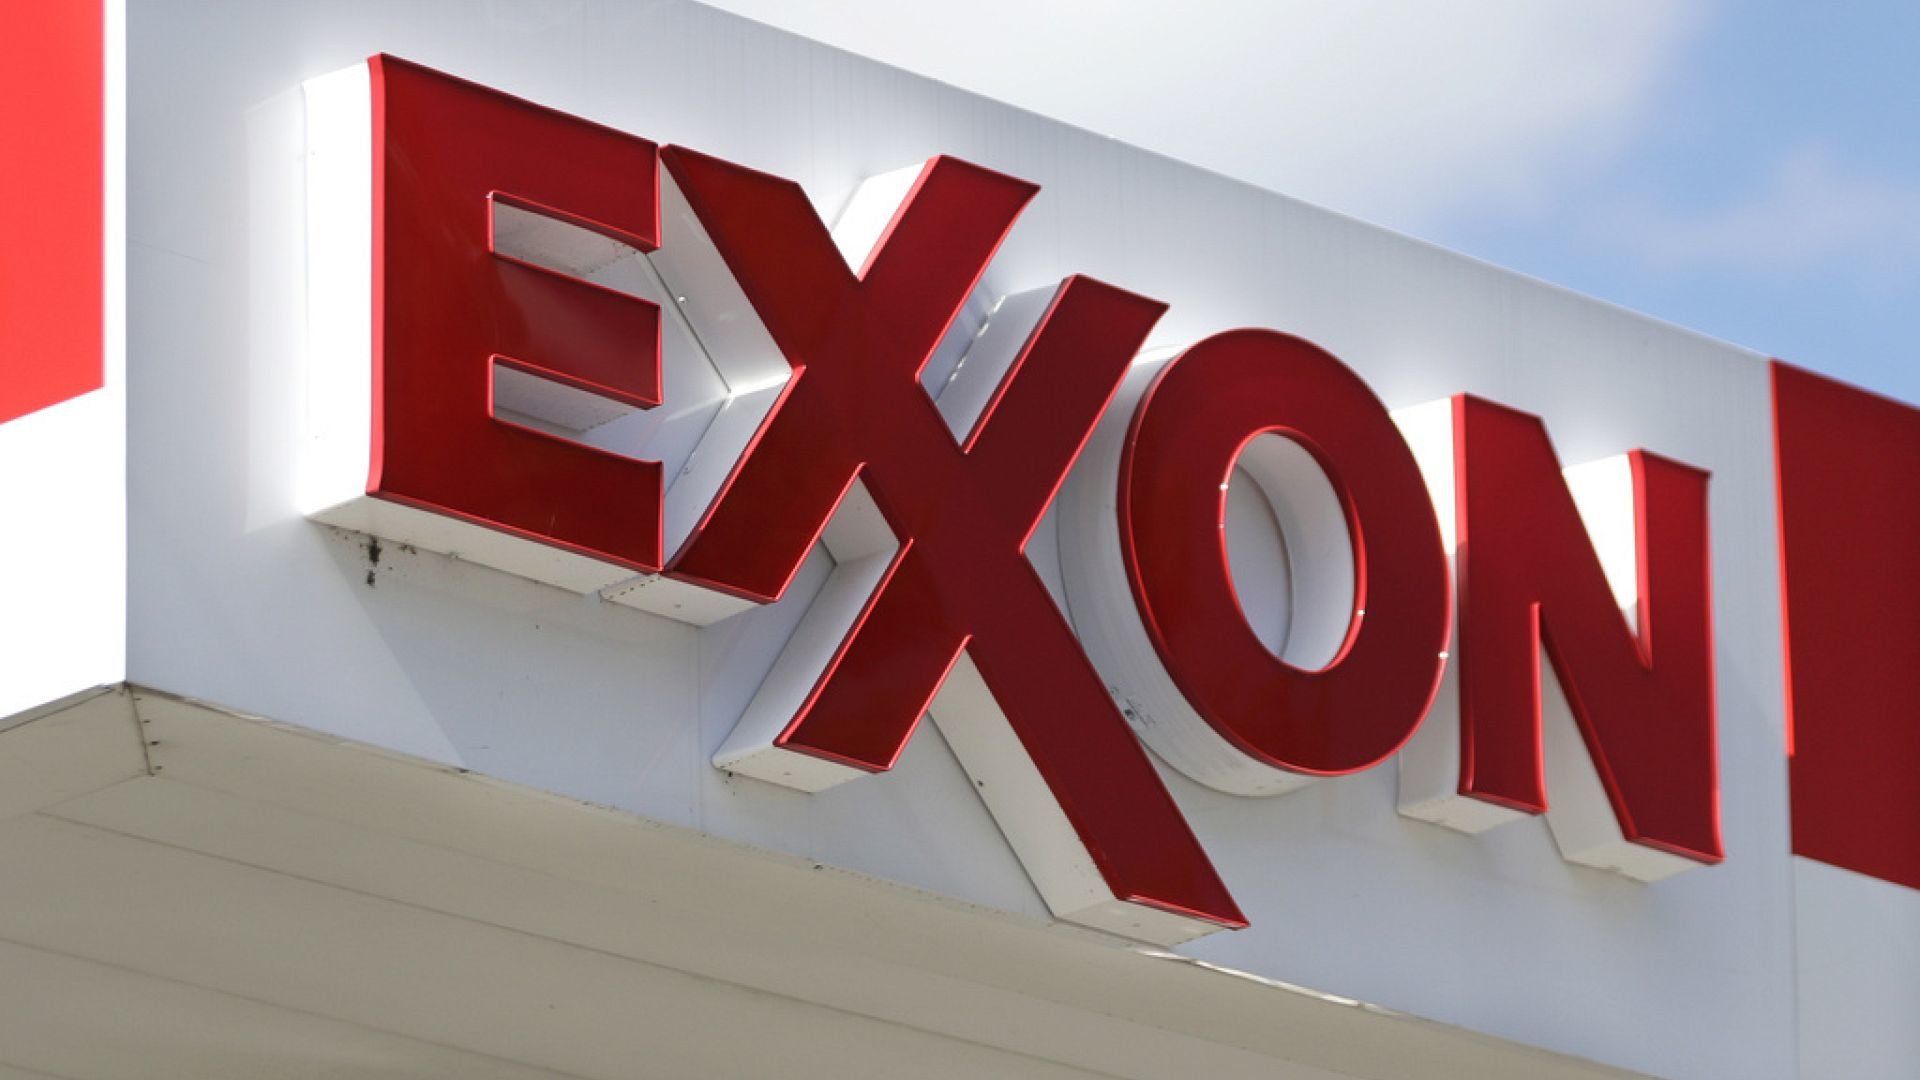 Türkei sucht Energiediversifizierung mit ExxonMobil: LNG-Deal im Wert von 1,1 Milliarden US-Dollar inmitten der Verbesserung zwischen den USA und der Türkei und der Verletzlichkeit Russlands